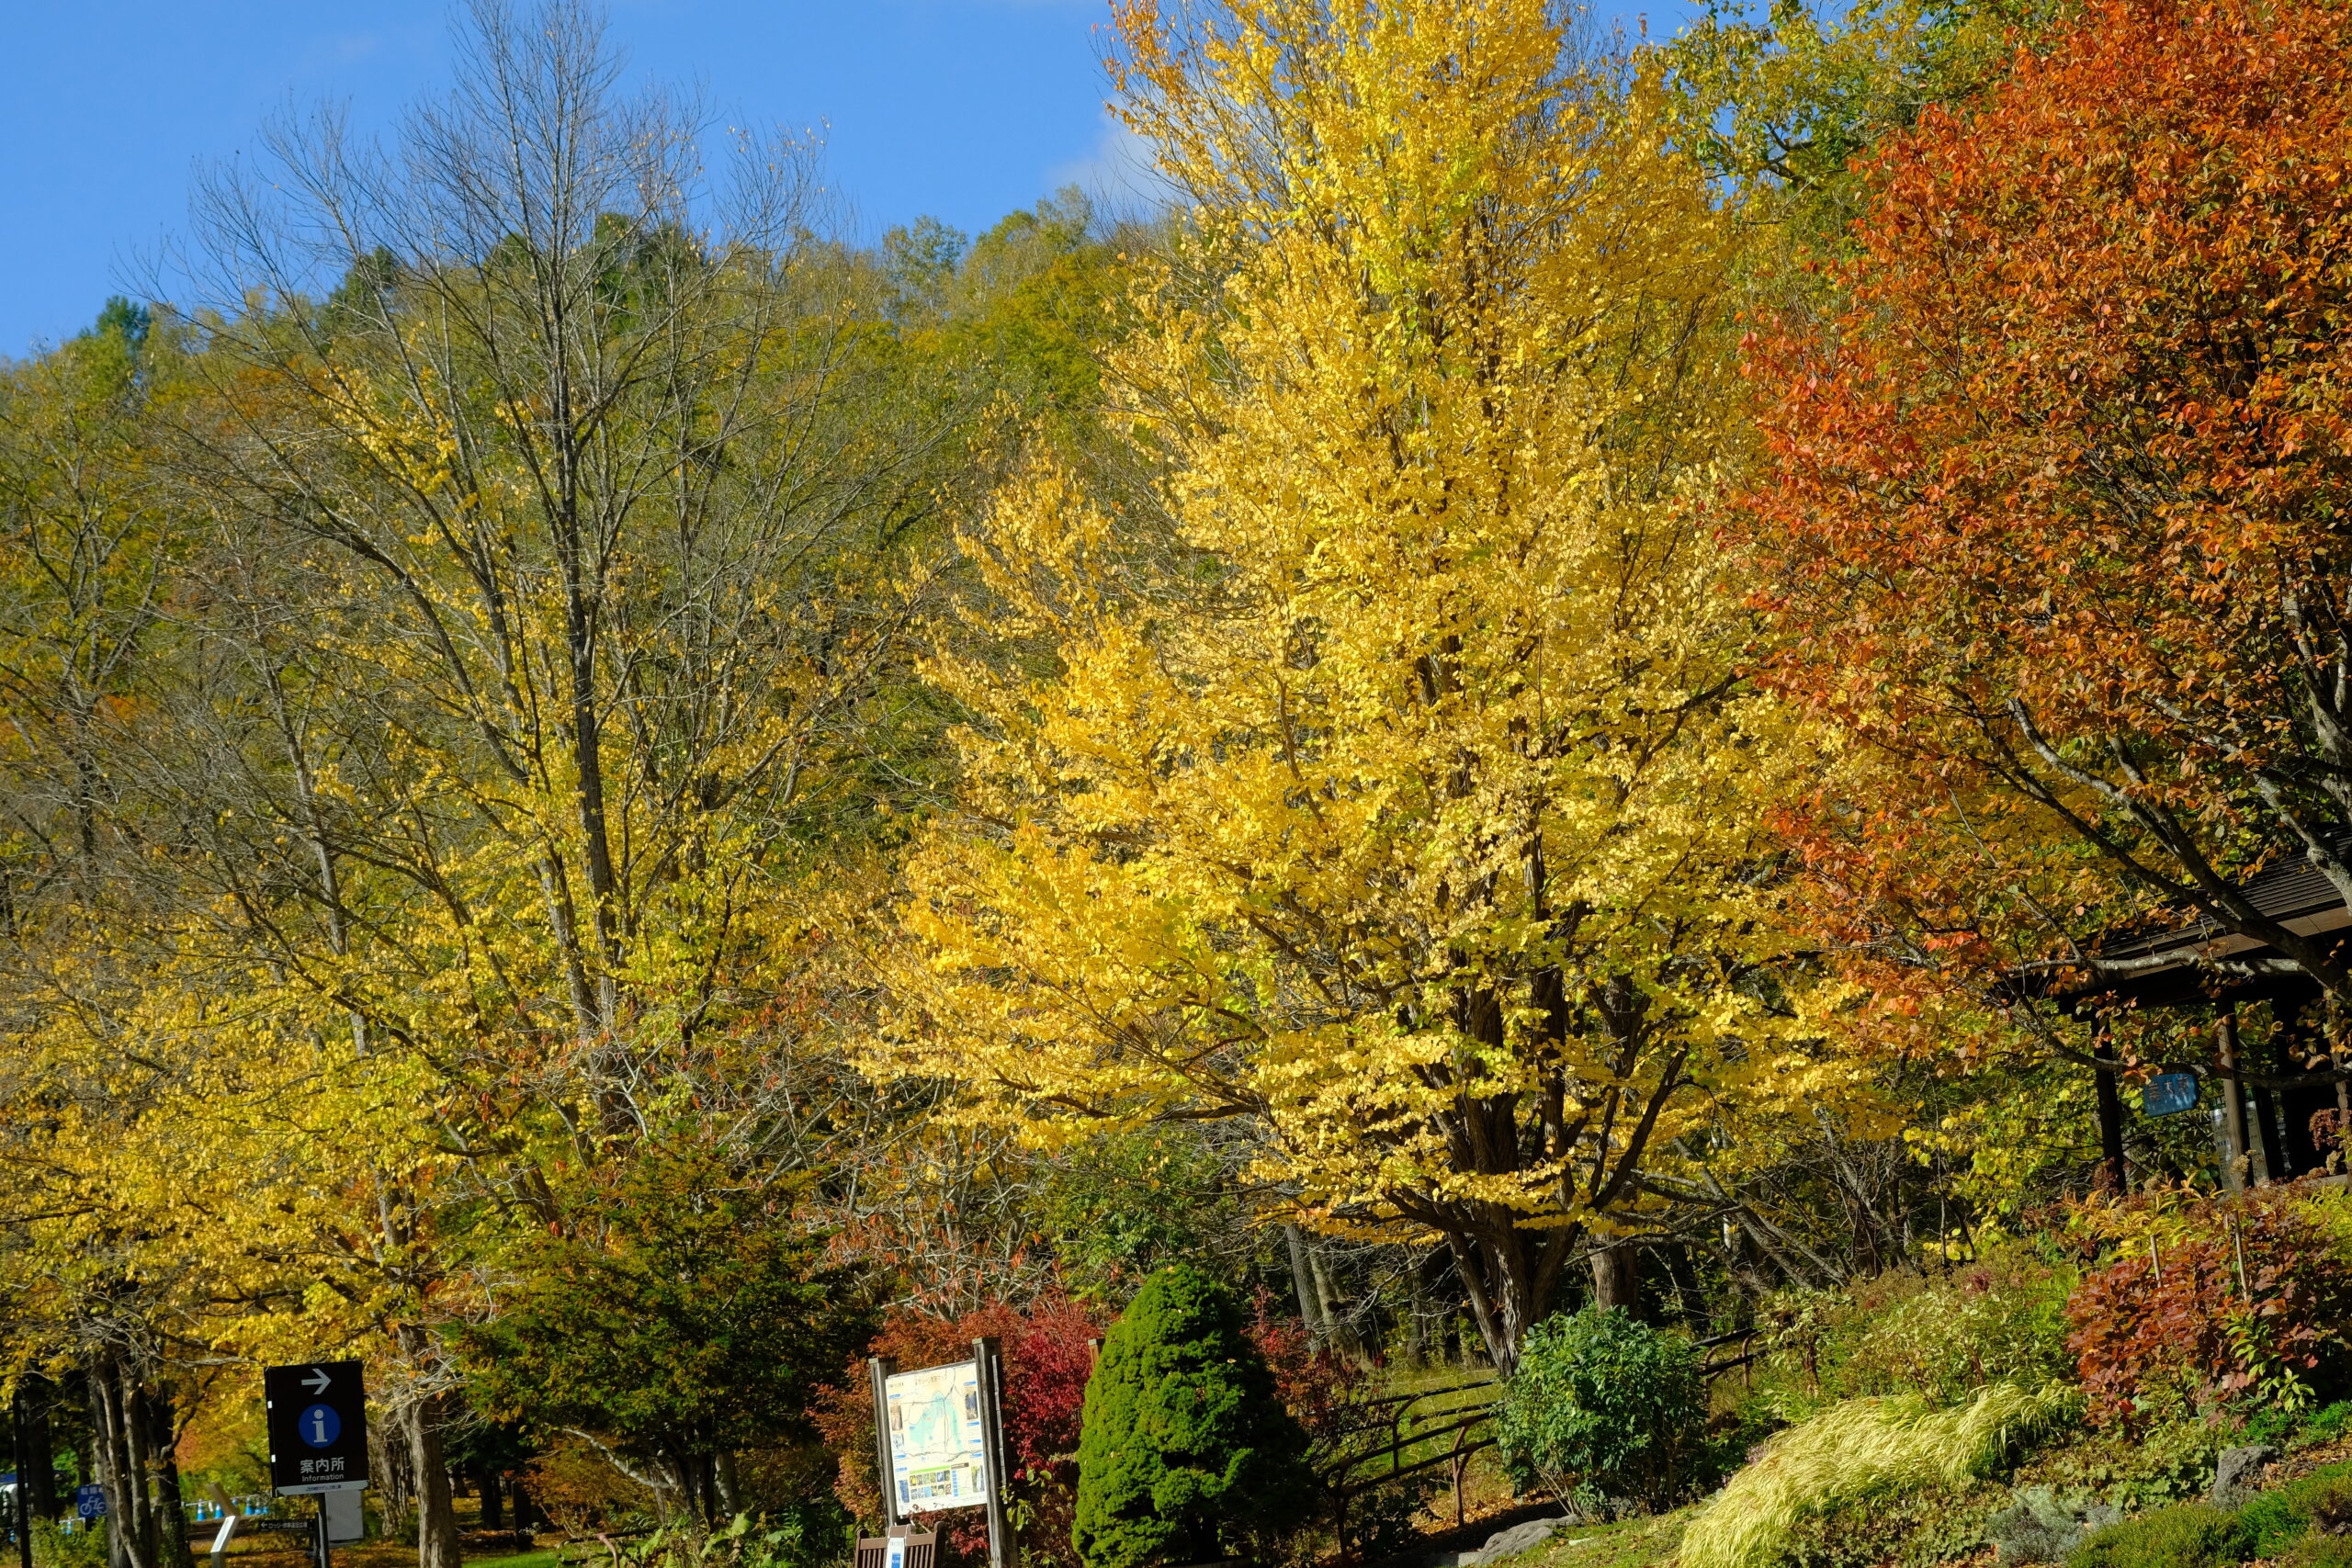  北海道の紅葉のおすすめスポット17位:国営滝野すずらん丘陵公園